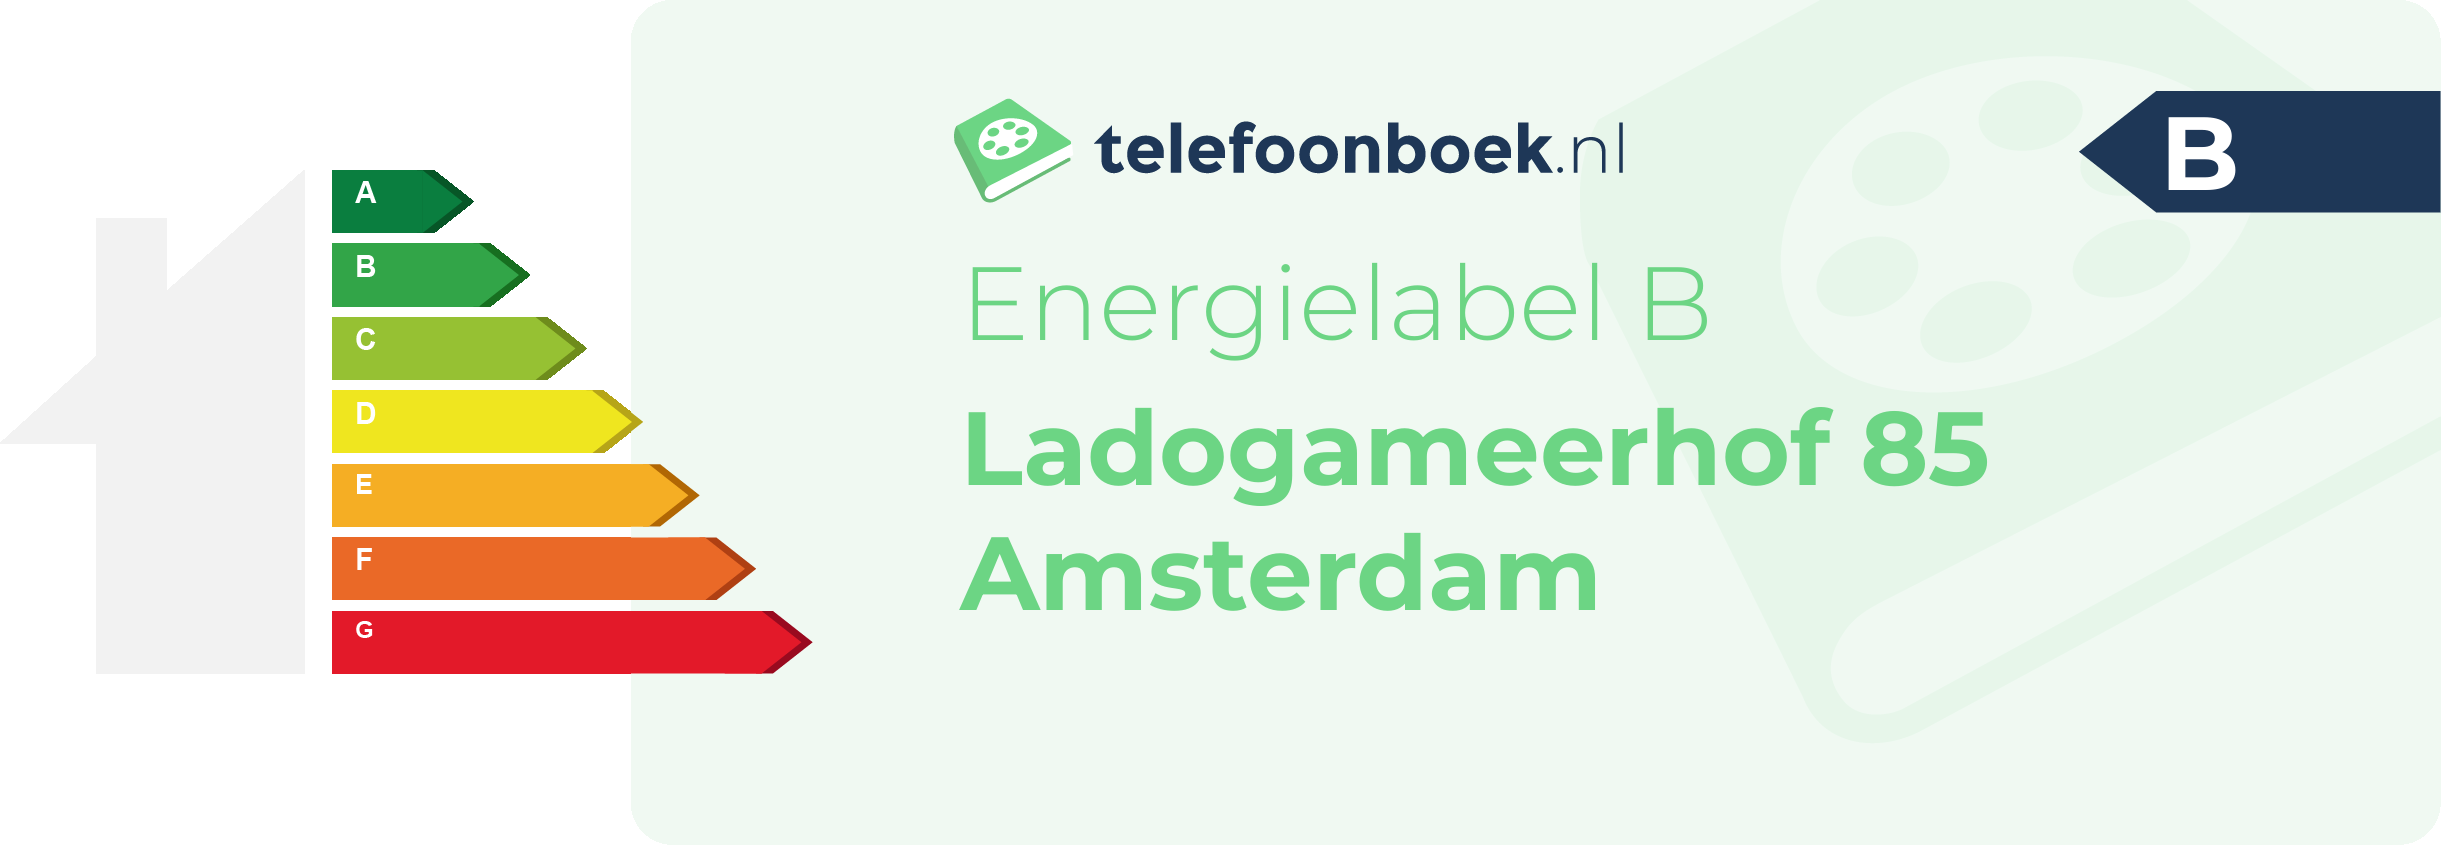 Energielabel Ladogameerhof 85 Amsterdam